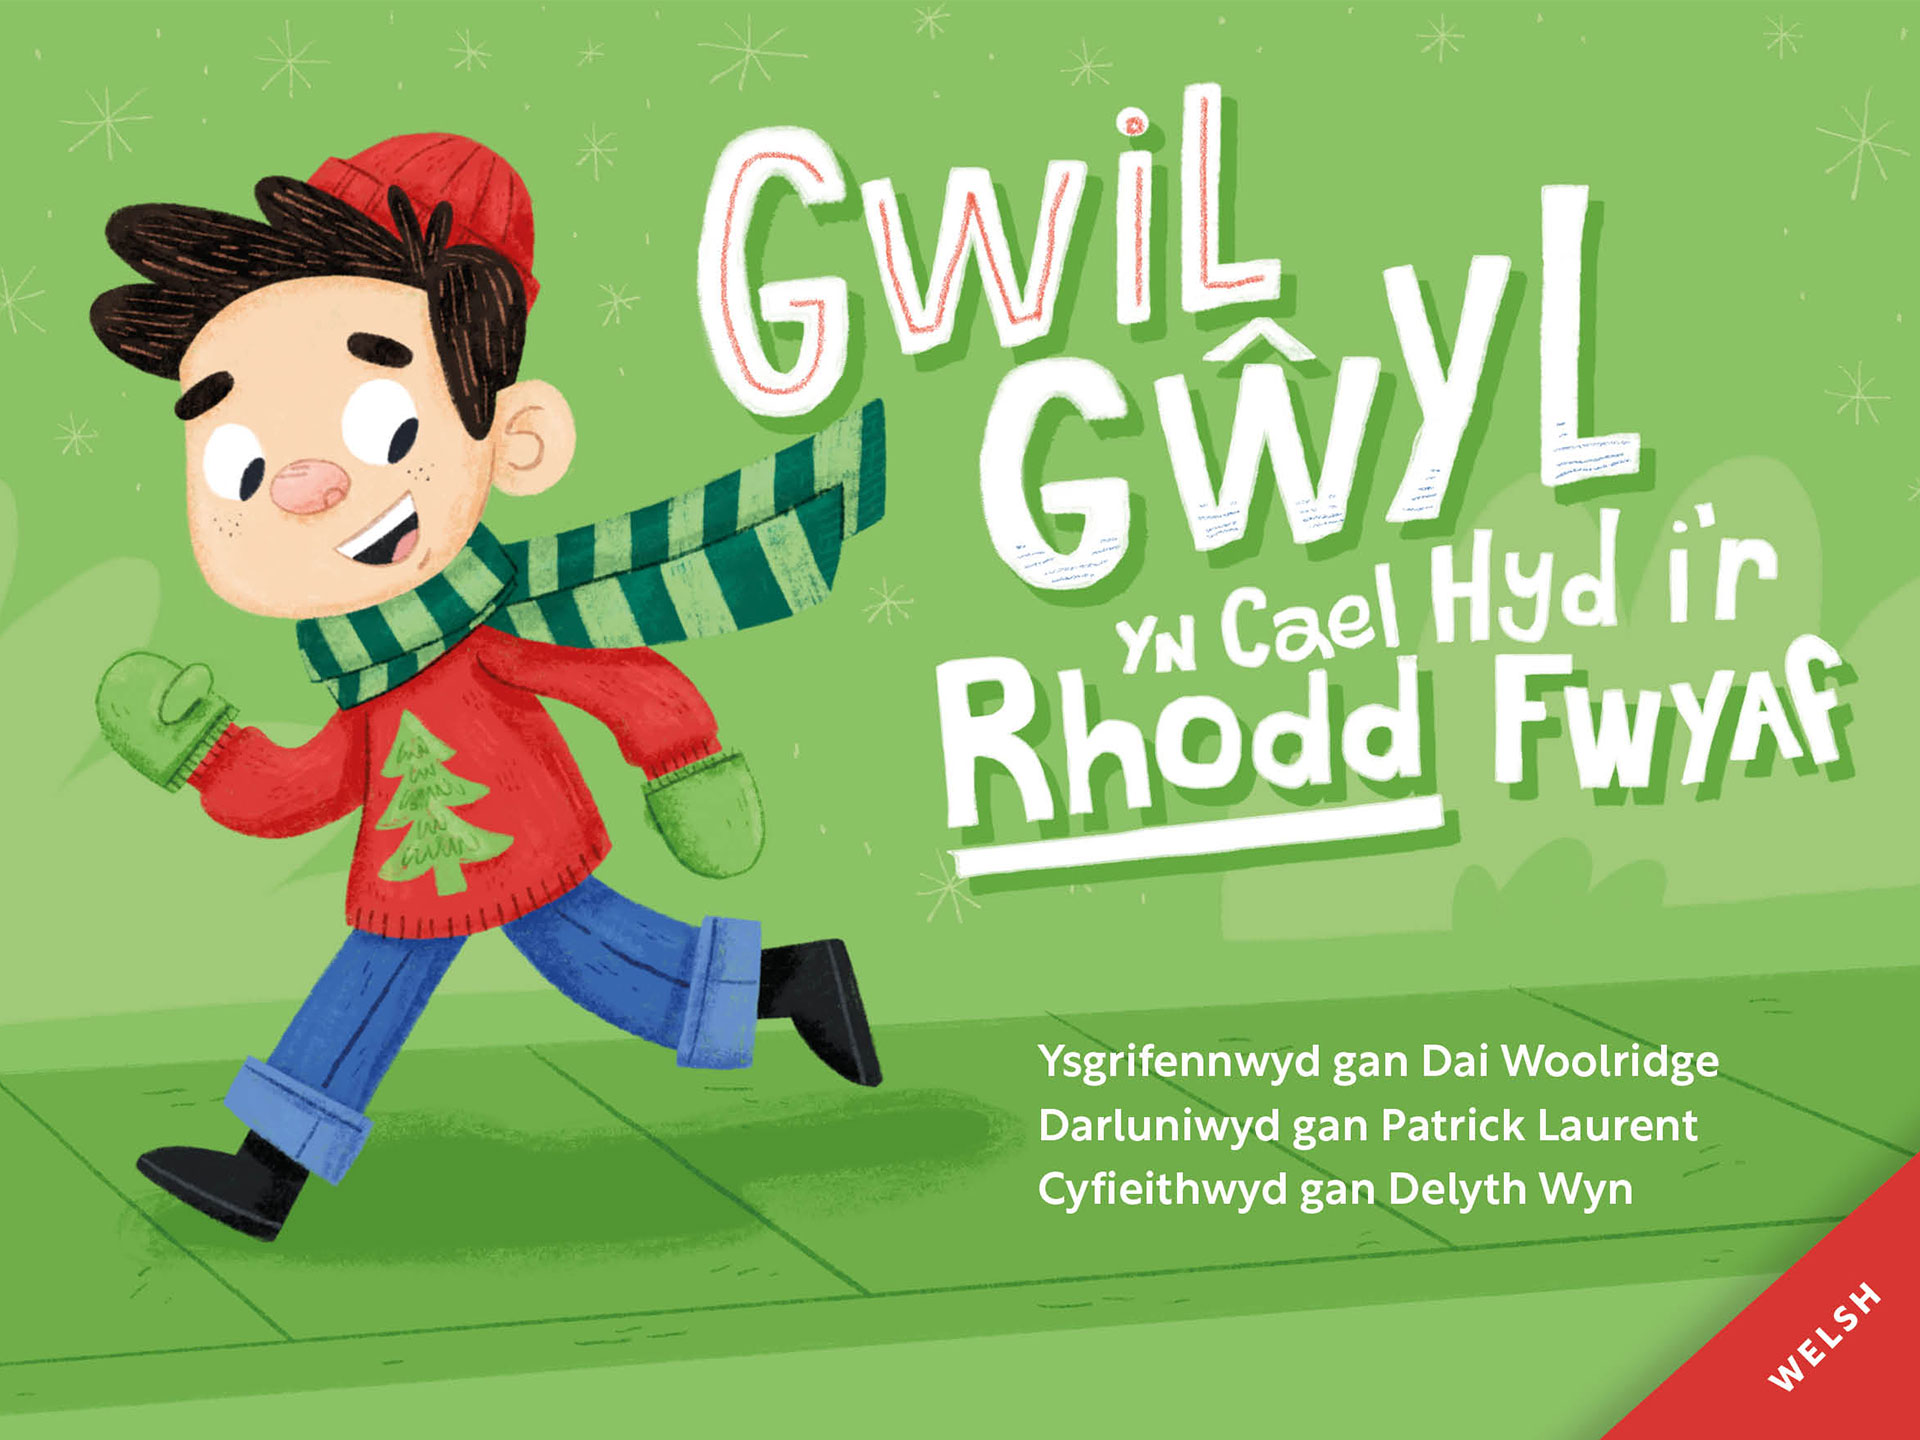 Gwil Gŵyl yn Cael Hyd i'r Rhodd Fwyaf - Welsh Festive Fred Finds the Greatest Gift